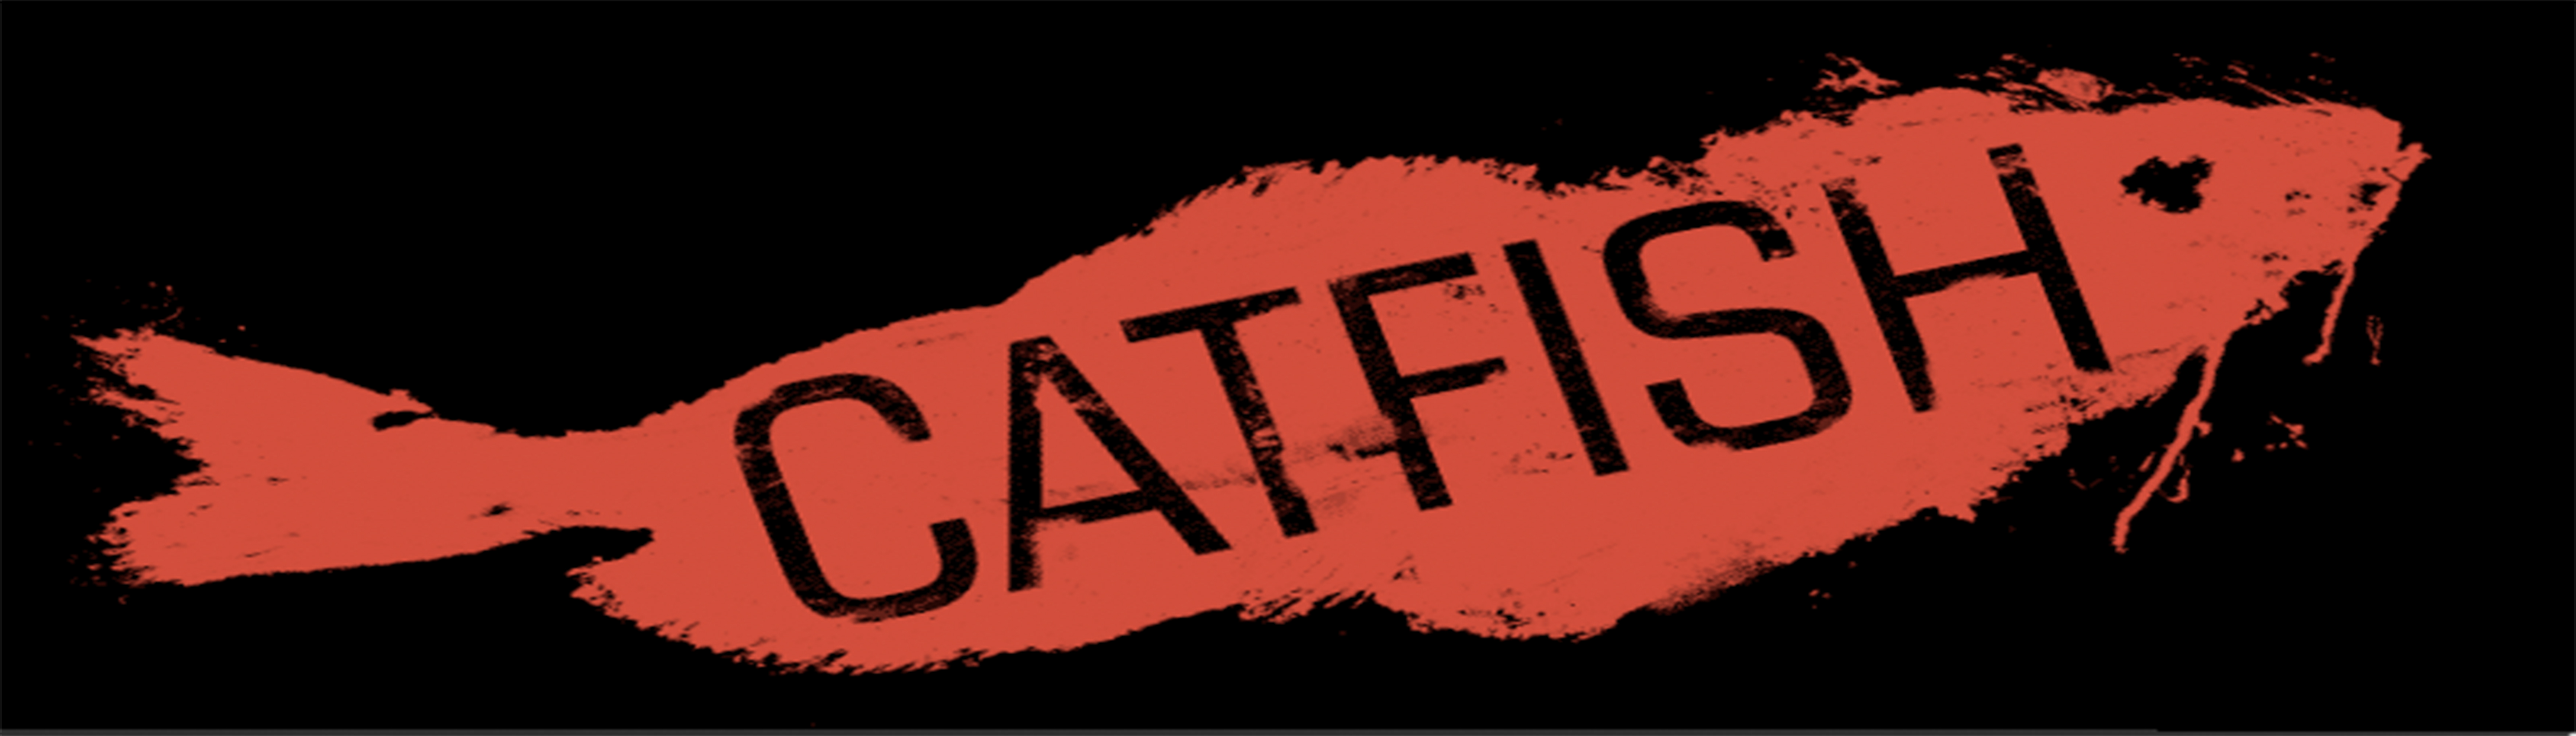 دانلود فیلم مستند Catfish